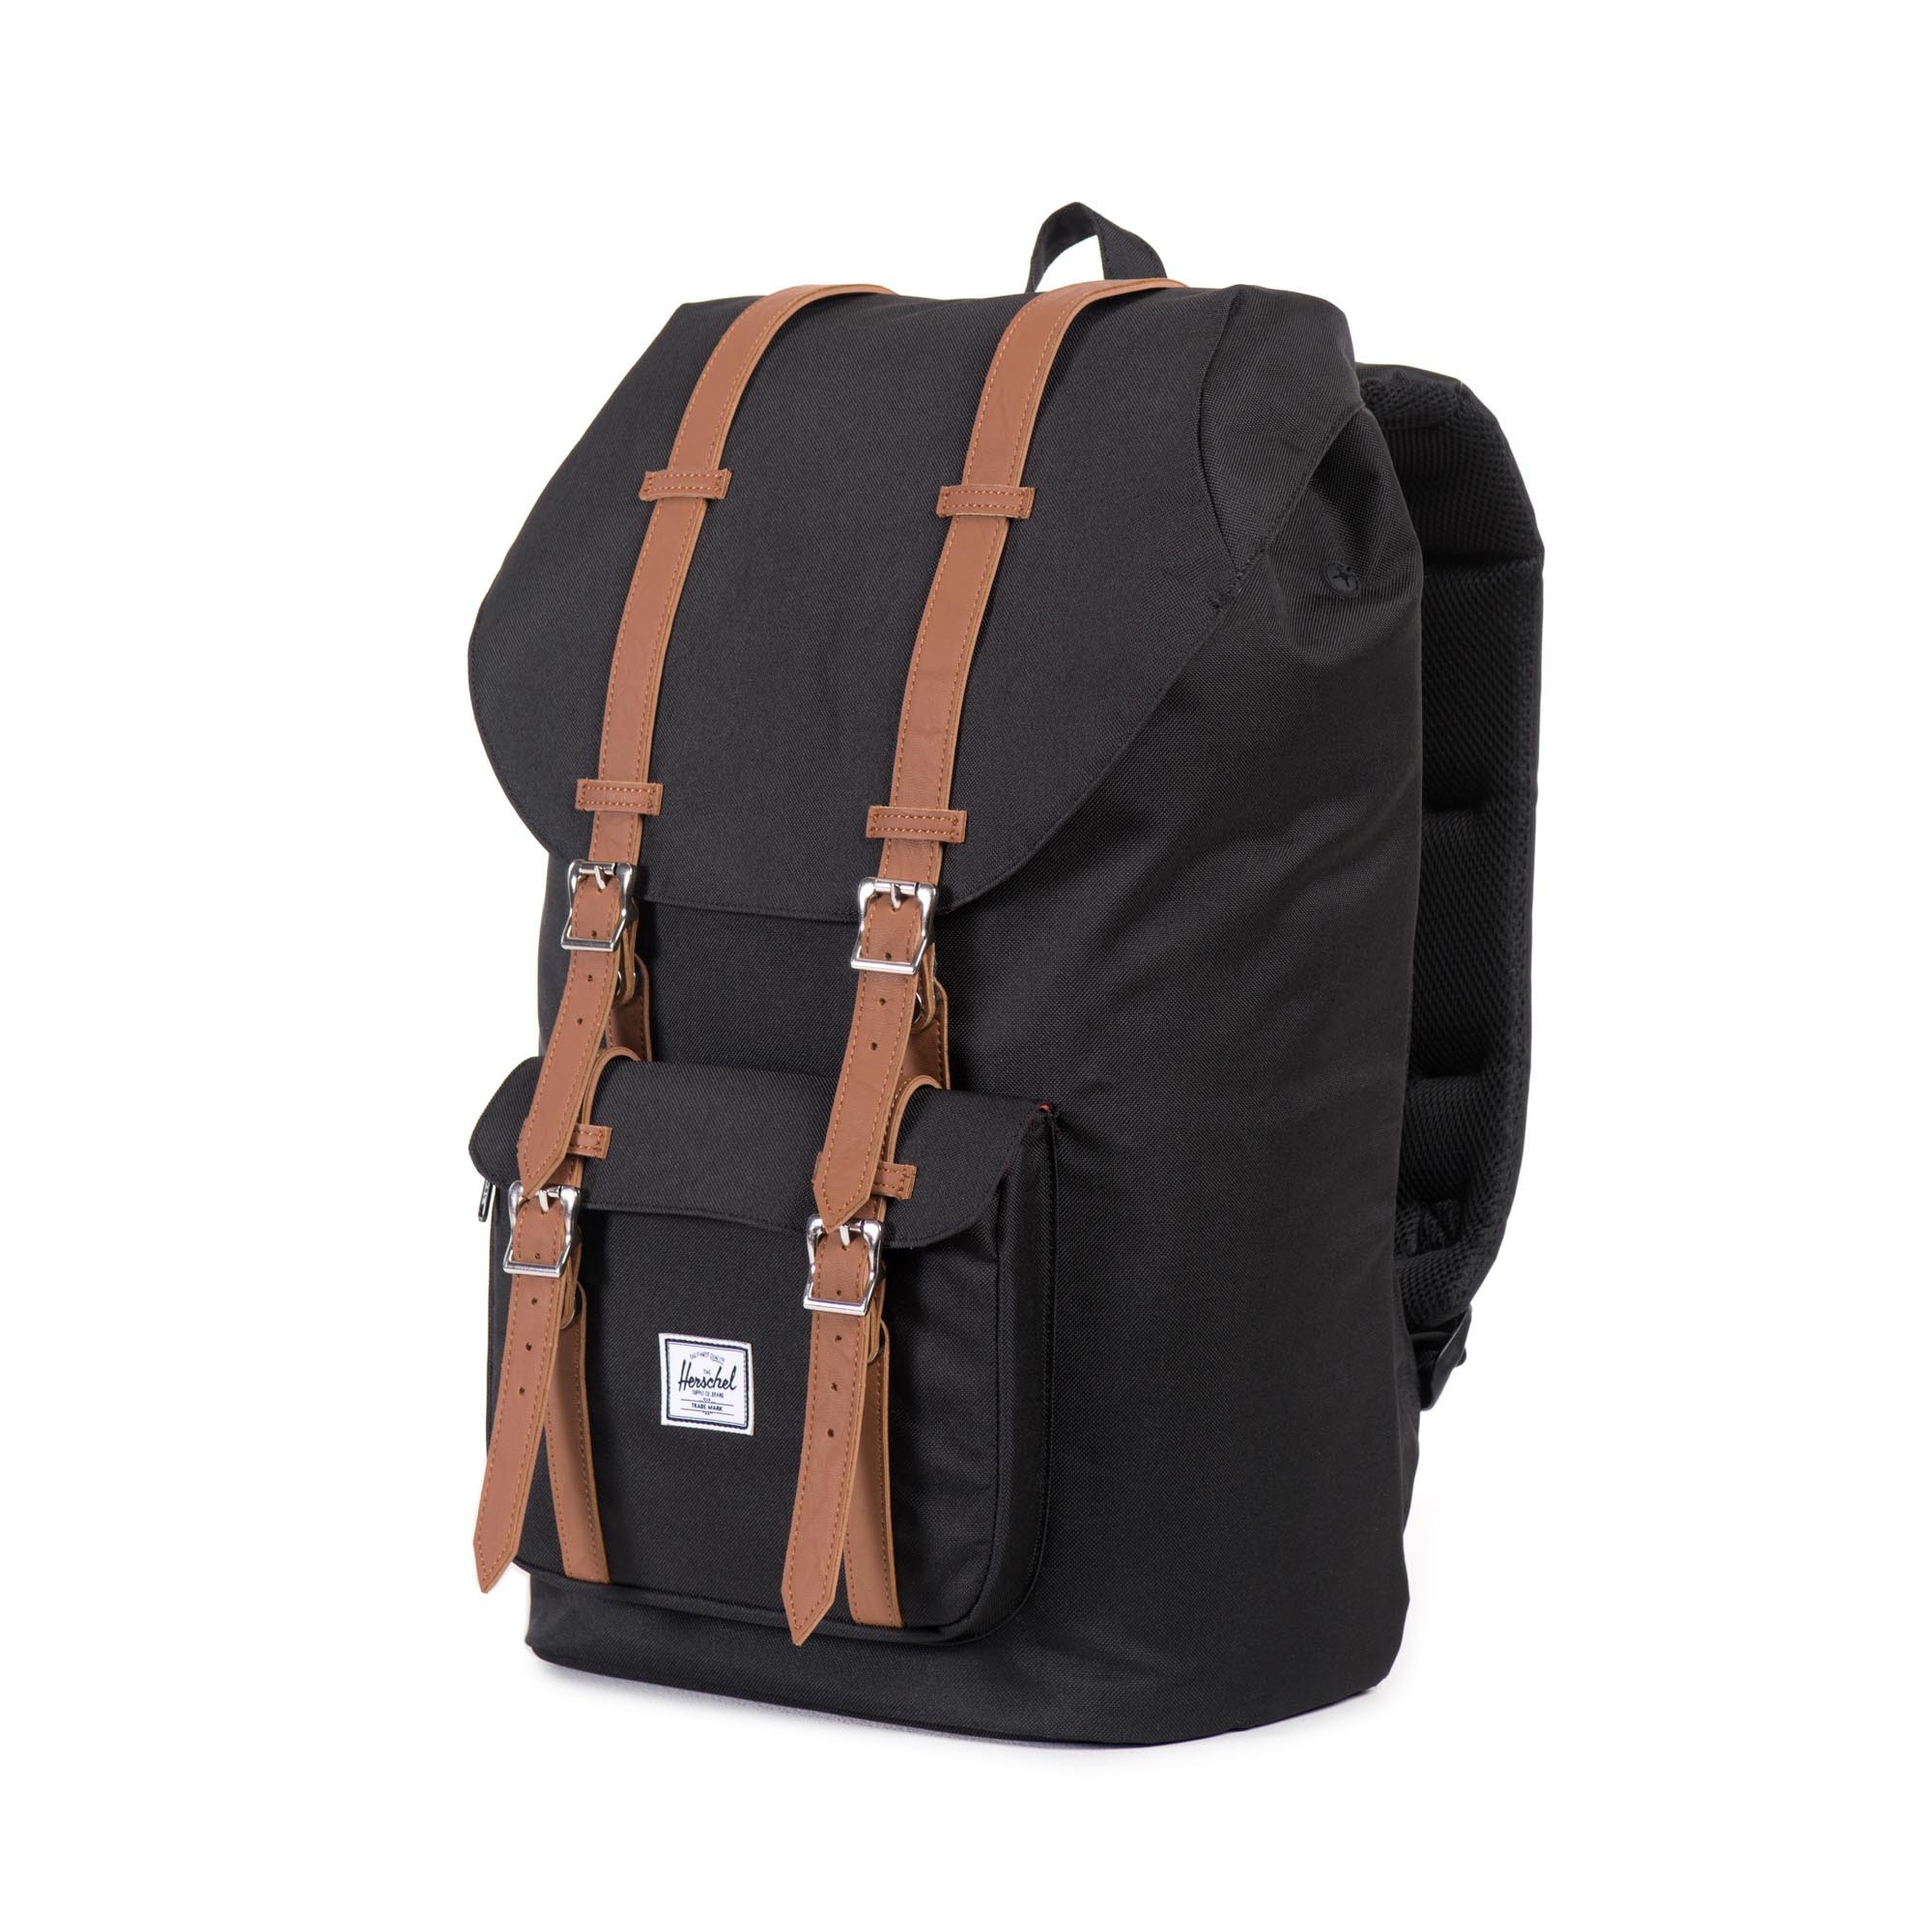 Herschel Backpack Travel. Herschel Little America Laptop Backpack ...